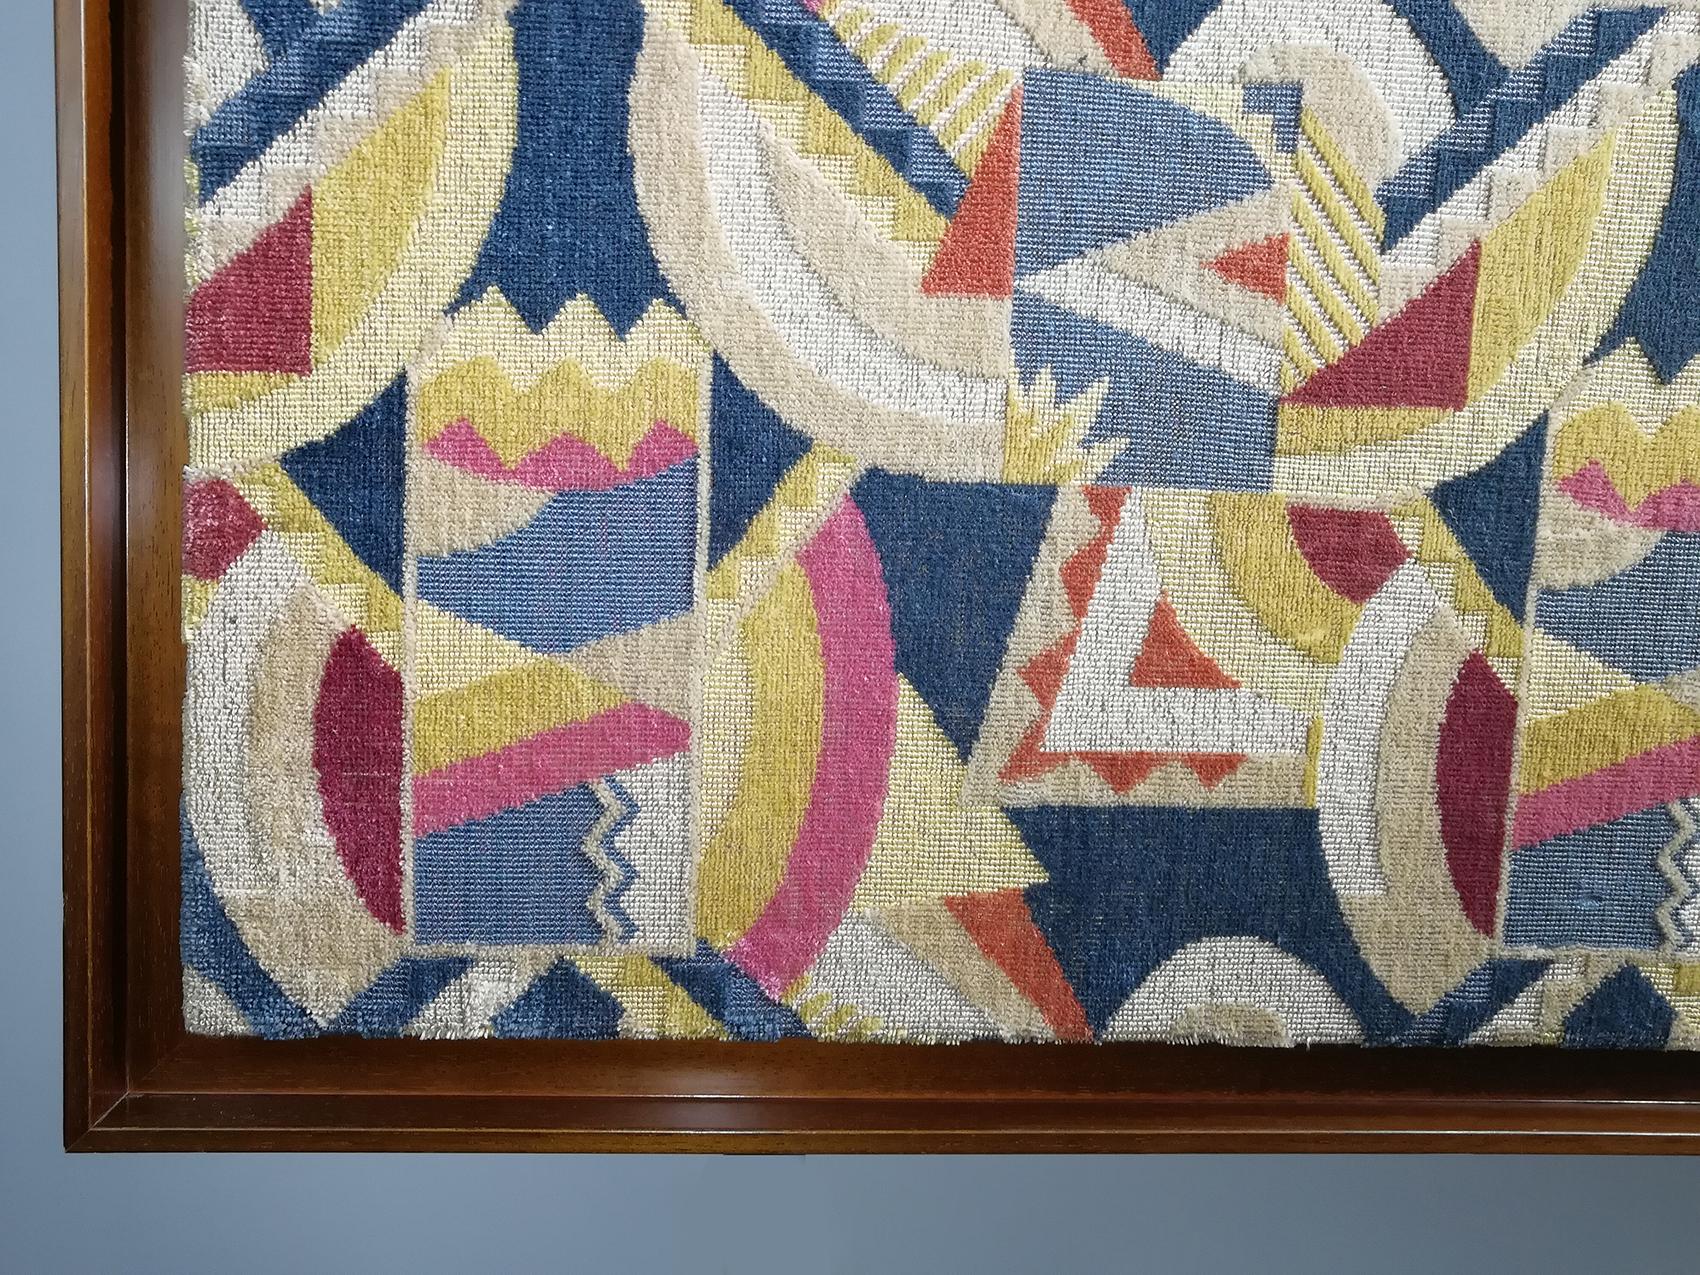 Panneau décoratif en tissu de laine livré avec un cadre en chêne.
Dessin abstrait typique de l'Art déco attribué à Walter Gropius (architecte : début du 20e siècle).
Walter Gropius (1883-1969) était un architecte allemand, fondateur de l'école du